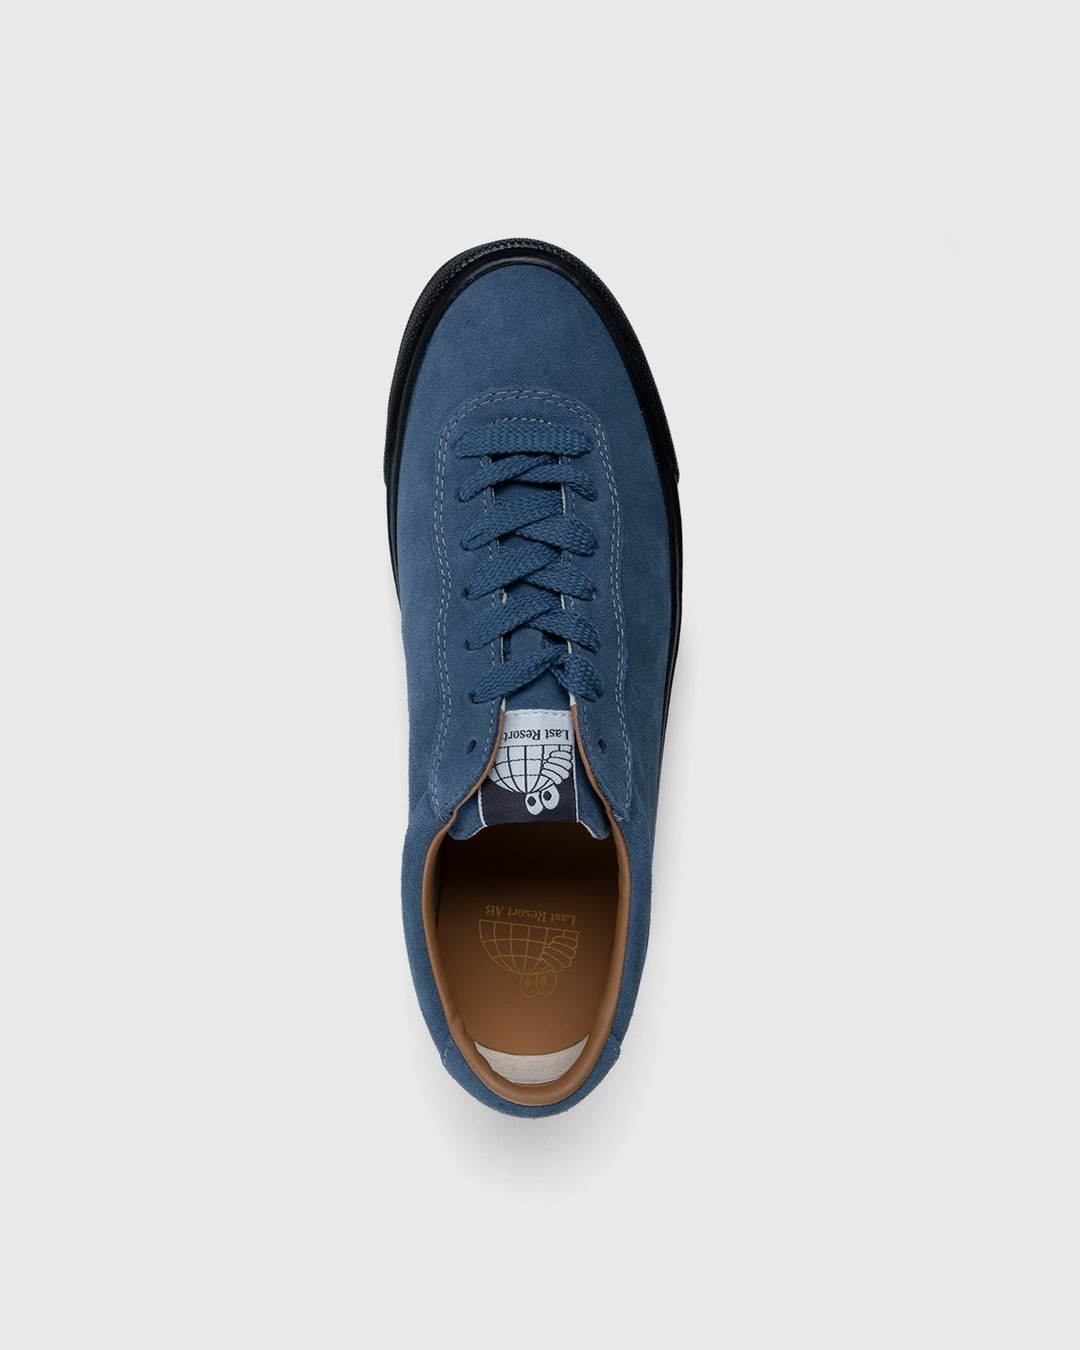 Last Resort AB – VM001 Suede Lo Blue/Black - Sneakers - Blue - Image 6